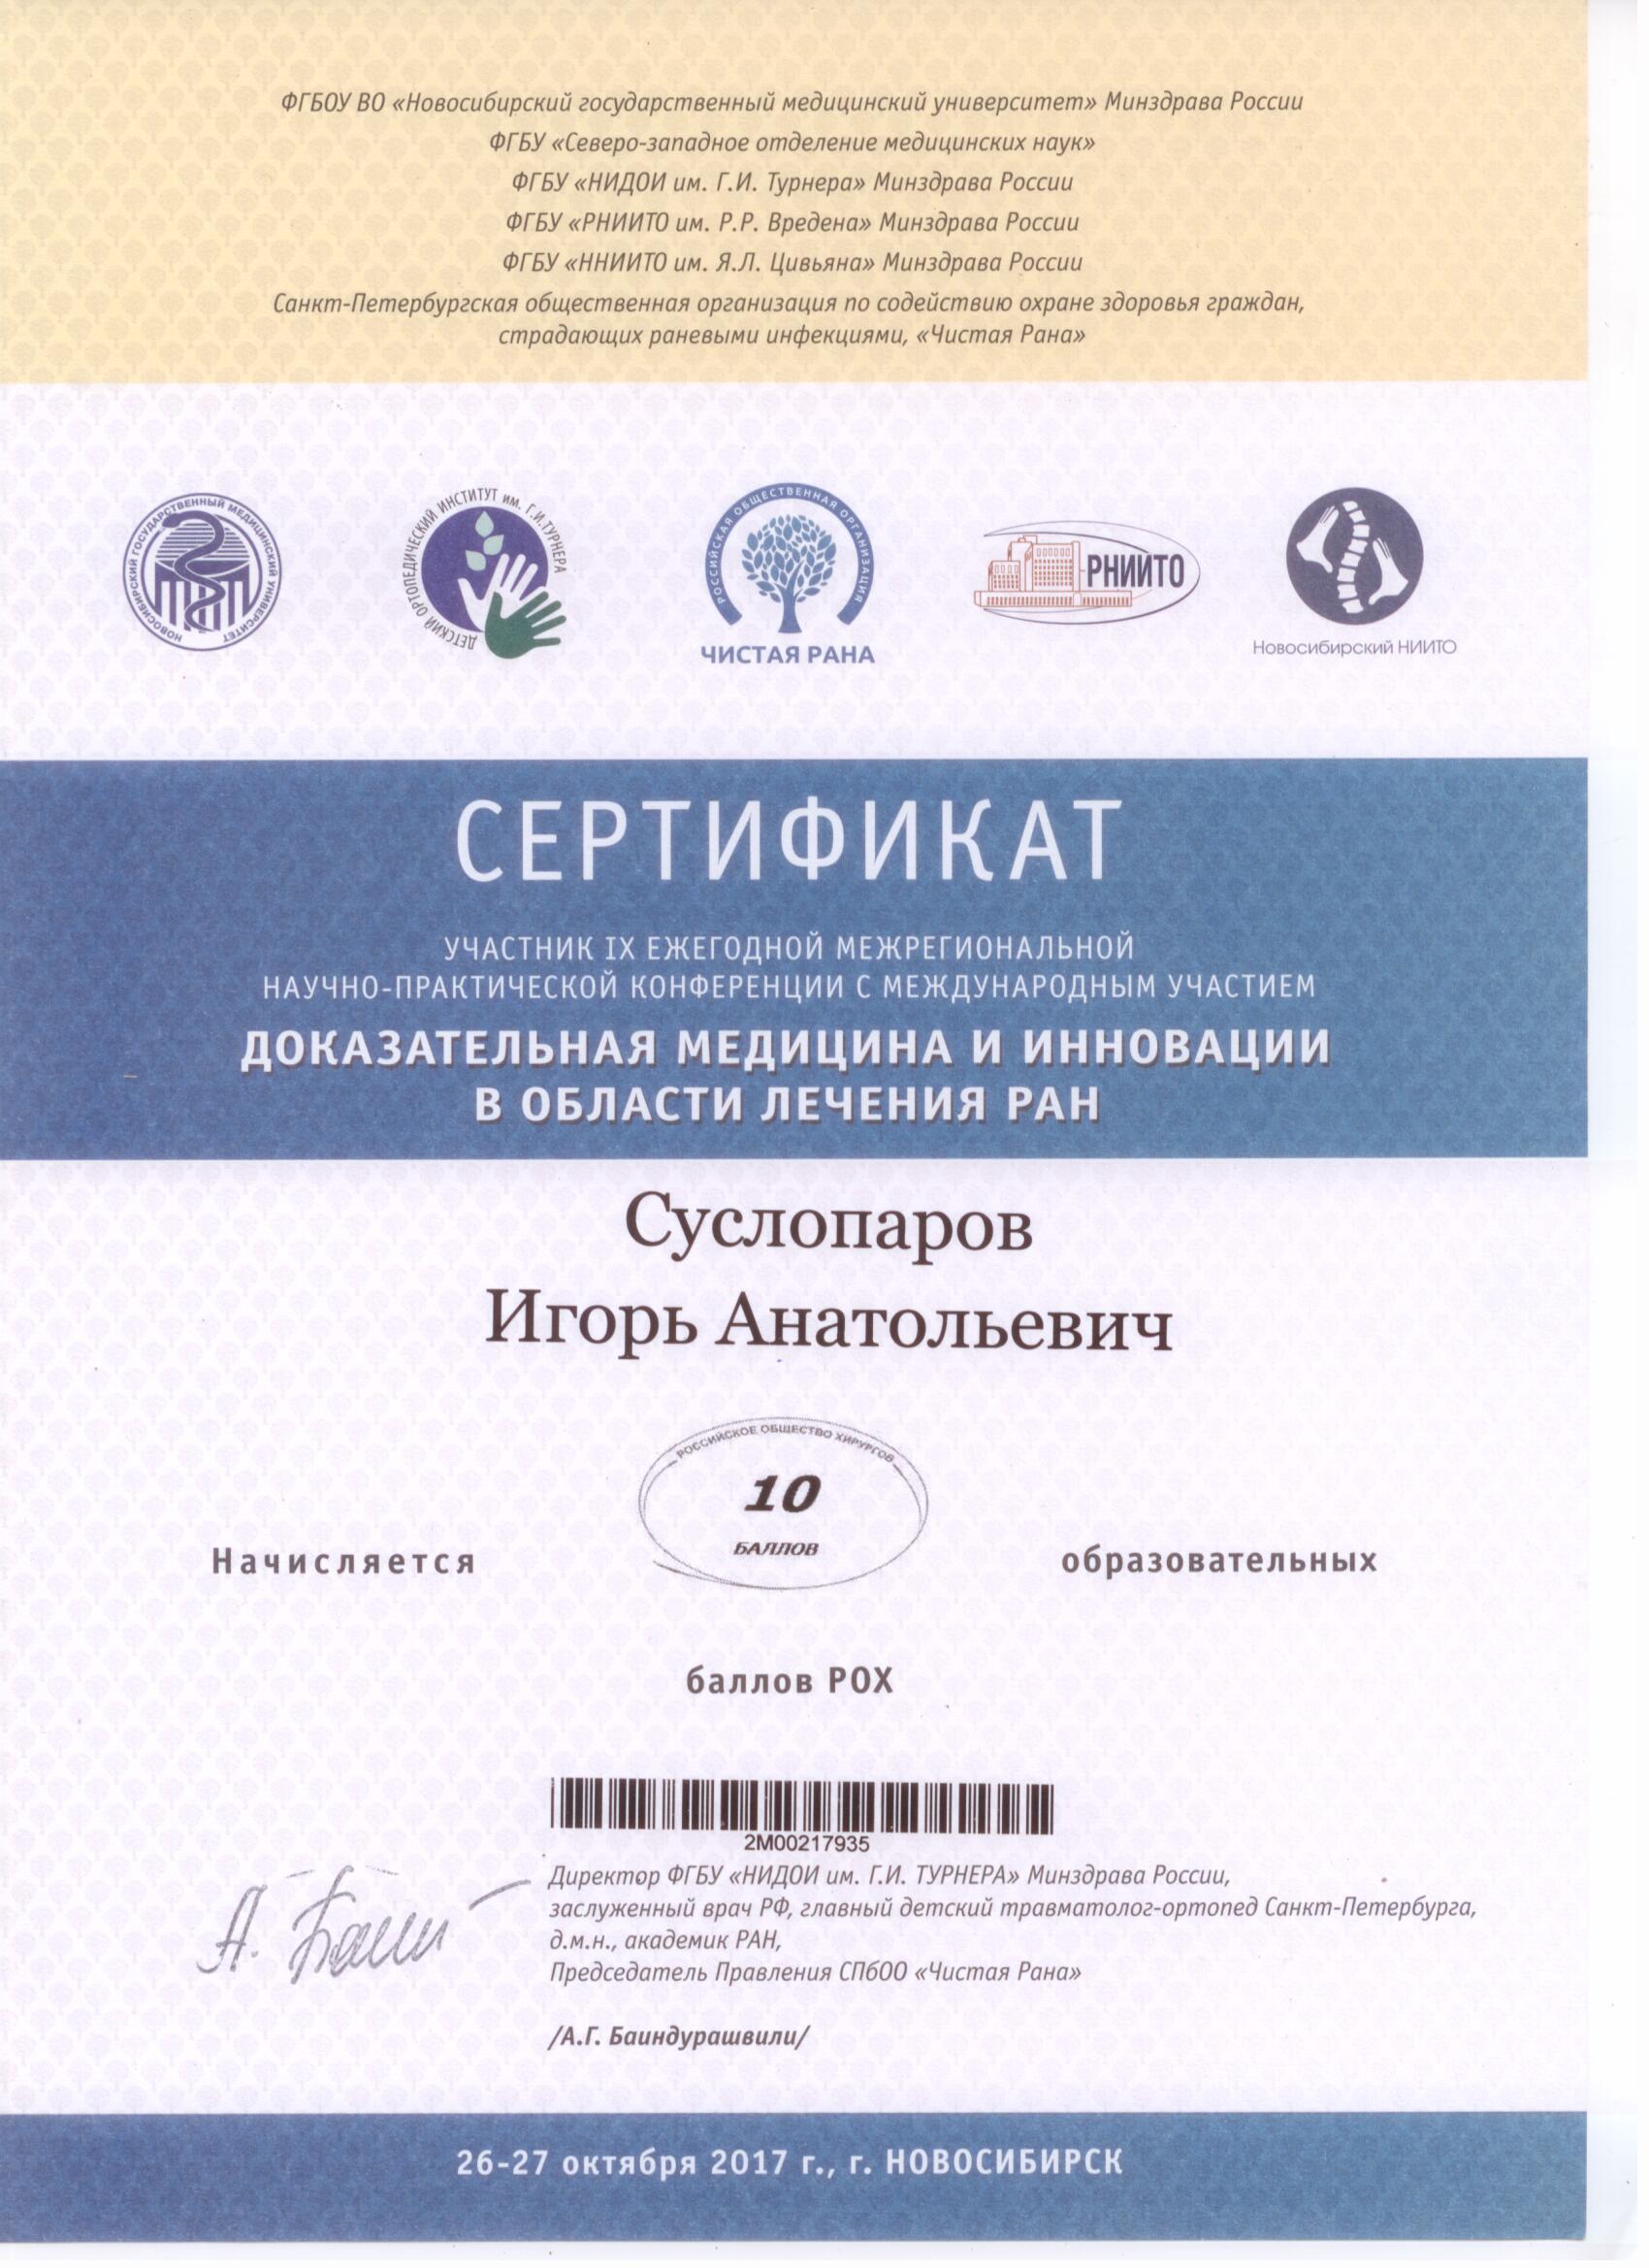 Доказательная медицина и инновации в области лечения ран. Сертификат Суслопарова И.А.